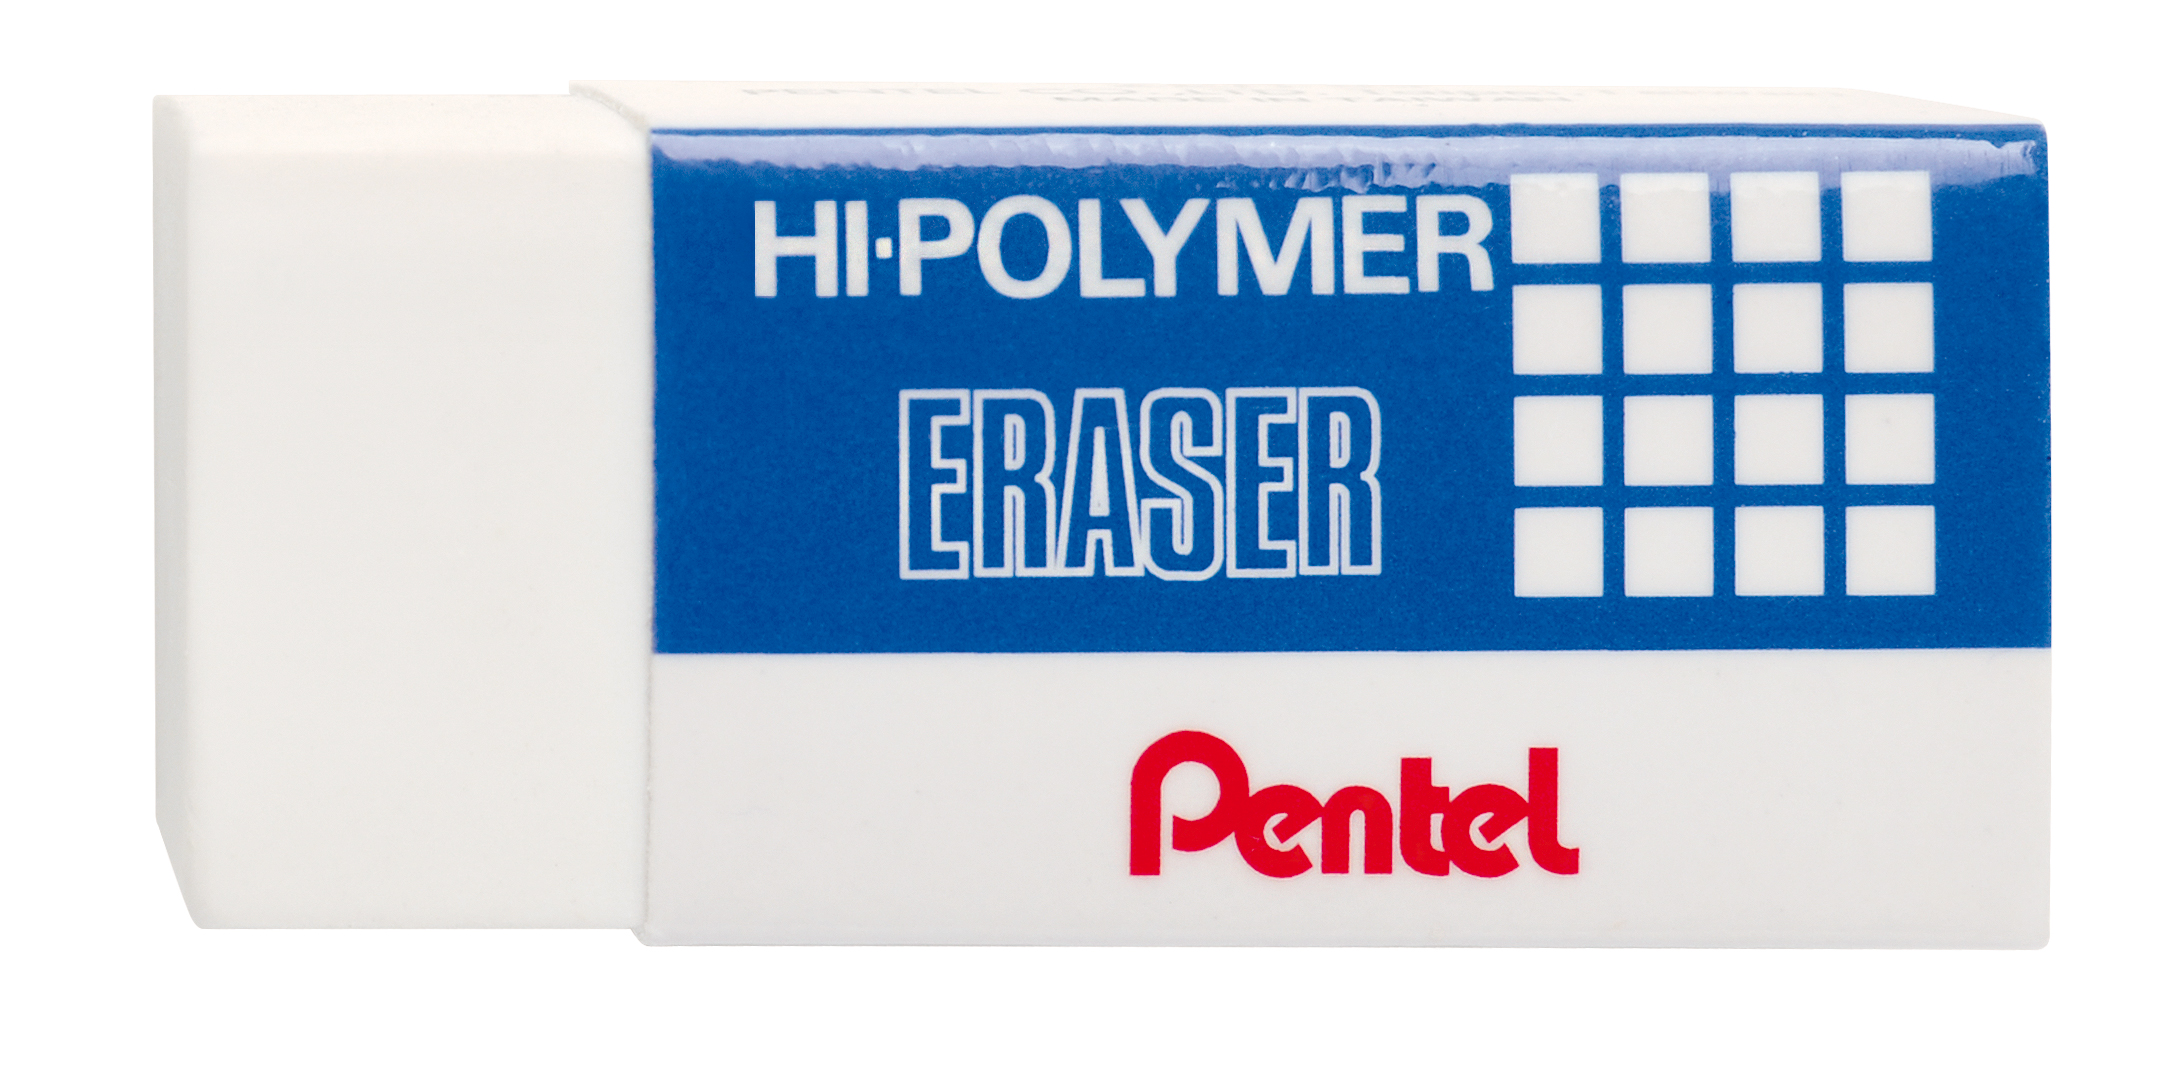 Radiergummi Hi-Polymer Eraser